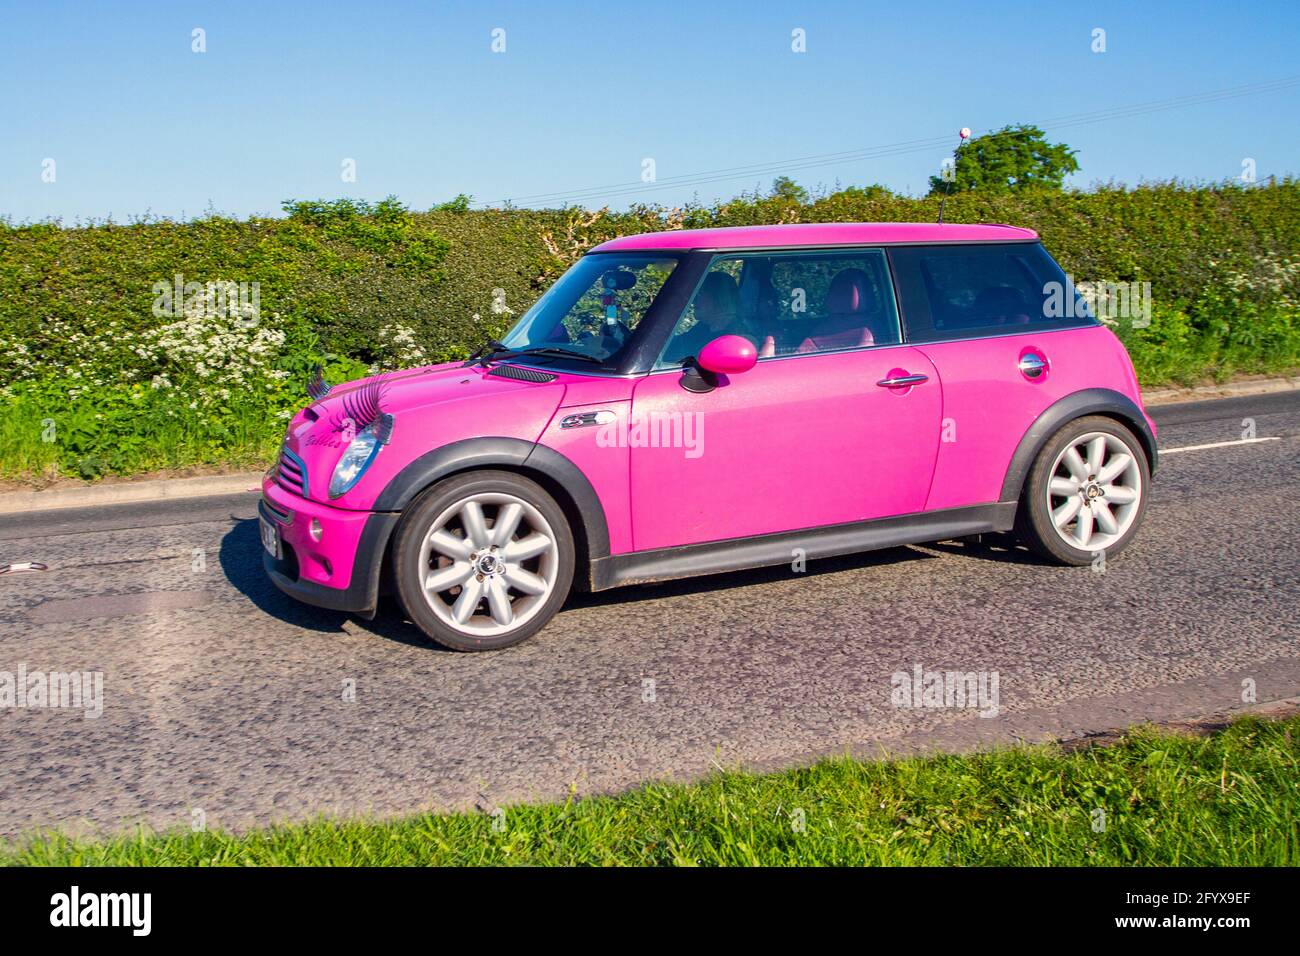 2004 pink Mini Cooper S, mit Augenbrauen auf den Scheinwerfern;  Fahrzeugverkehr, bewegliche Fahrzeuge, Autos, Fahrzeuge, die auf britischen  Straßen fahren, Motoren, auf dem Weg zur Capesthorne Hall classic May Car  Show, Ceshire